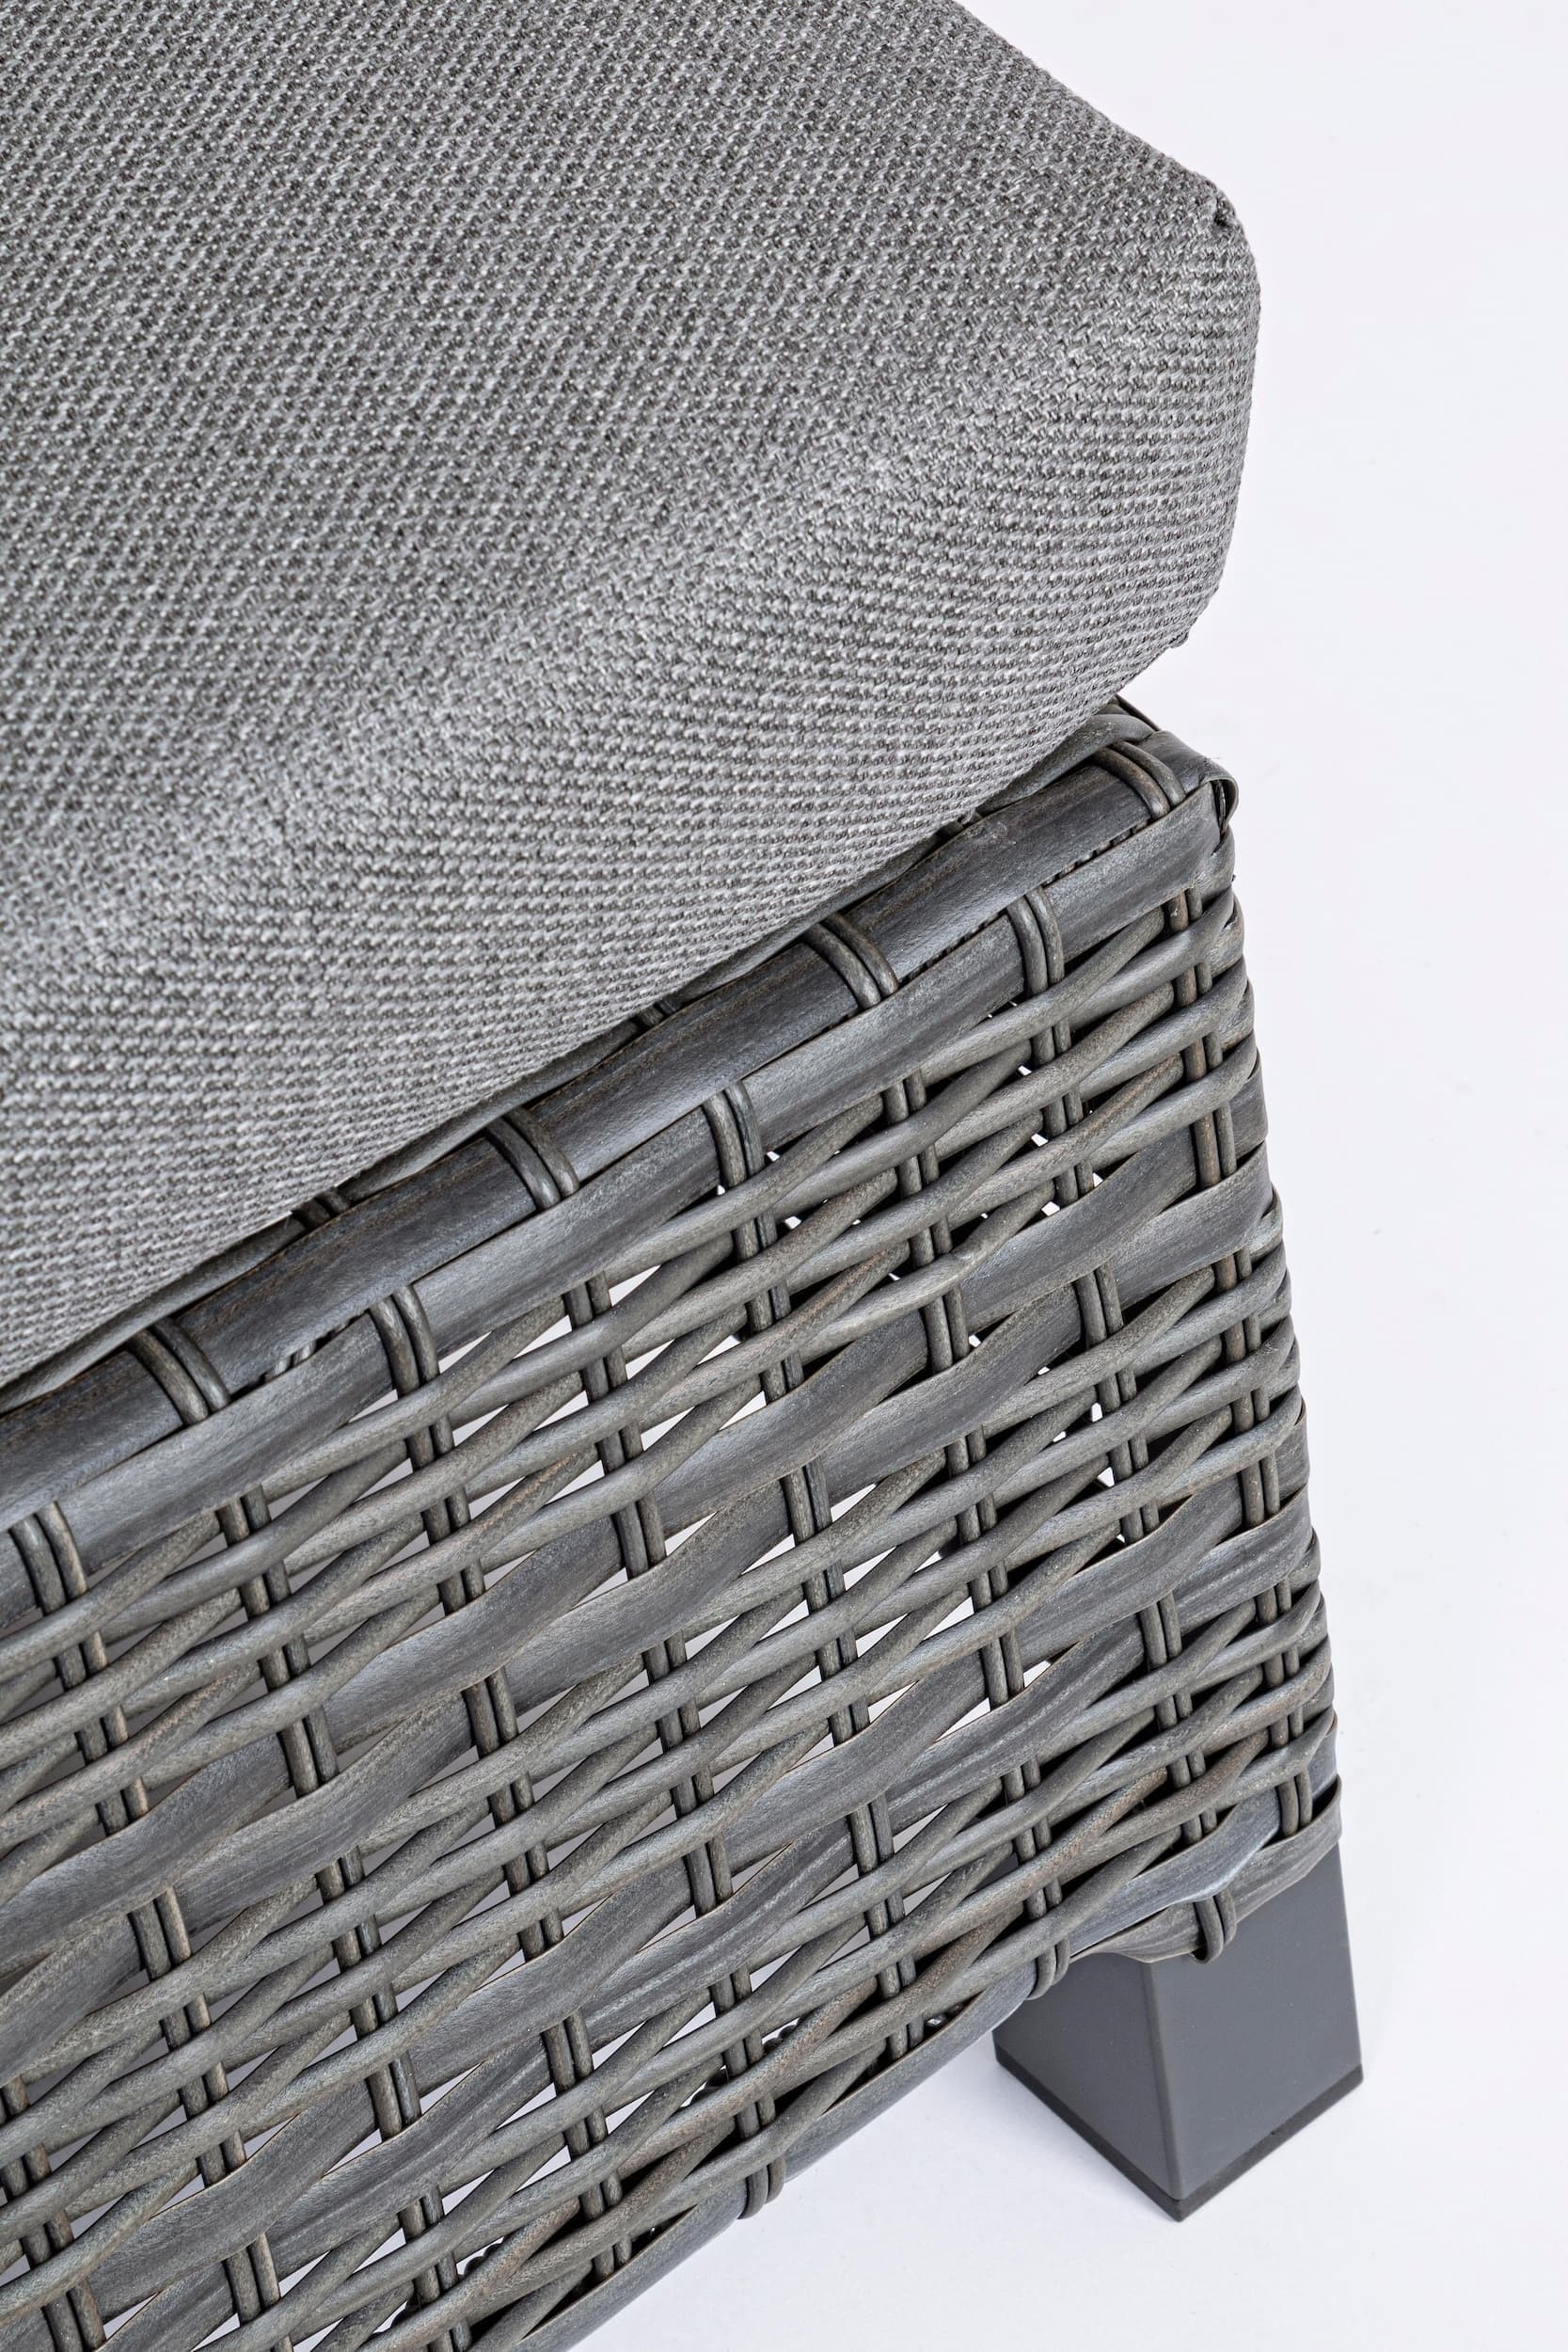 Taburet pentru terasa / gradina, din aluminiu si fibre sintetice, Britton Antracit, l57xA60xH40 cm (6)